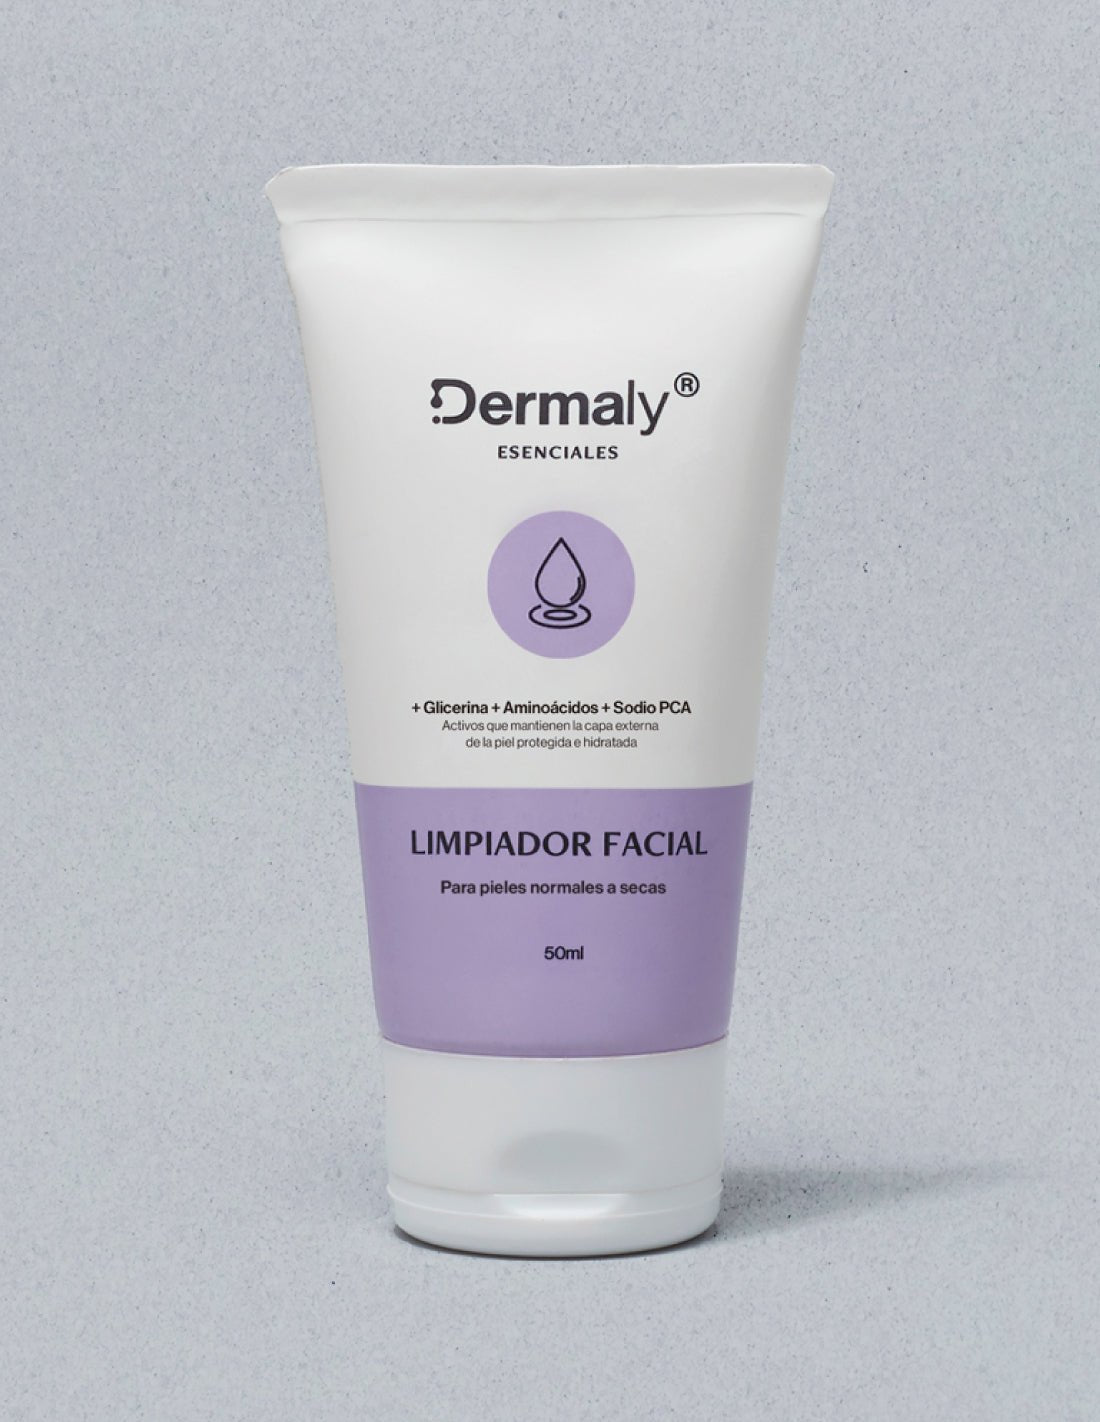 Limpiador facial Para piel normal - Dermaly